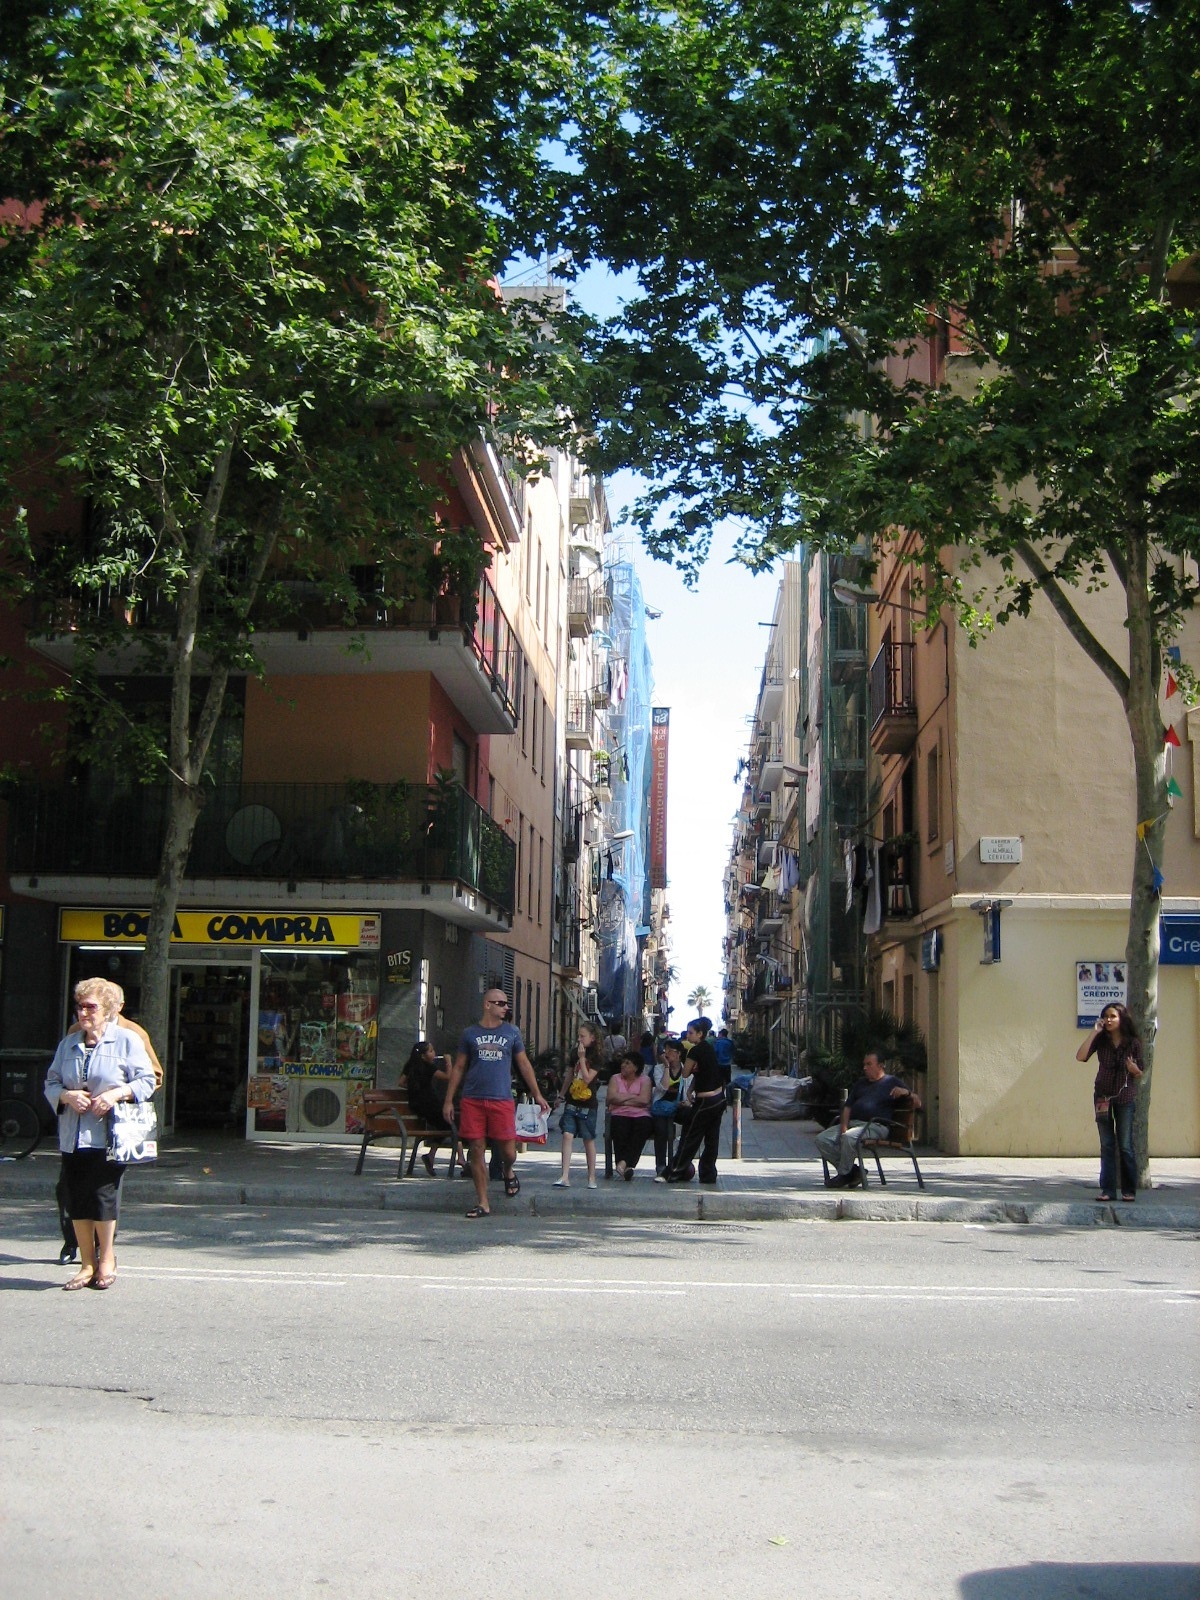 Rue touristique du quartier de Barcelone : La Barceloneta